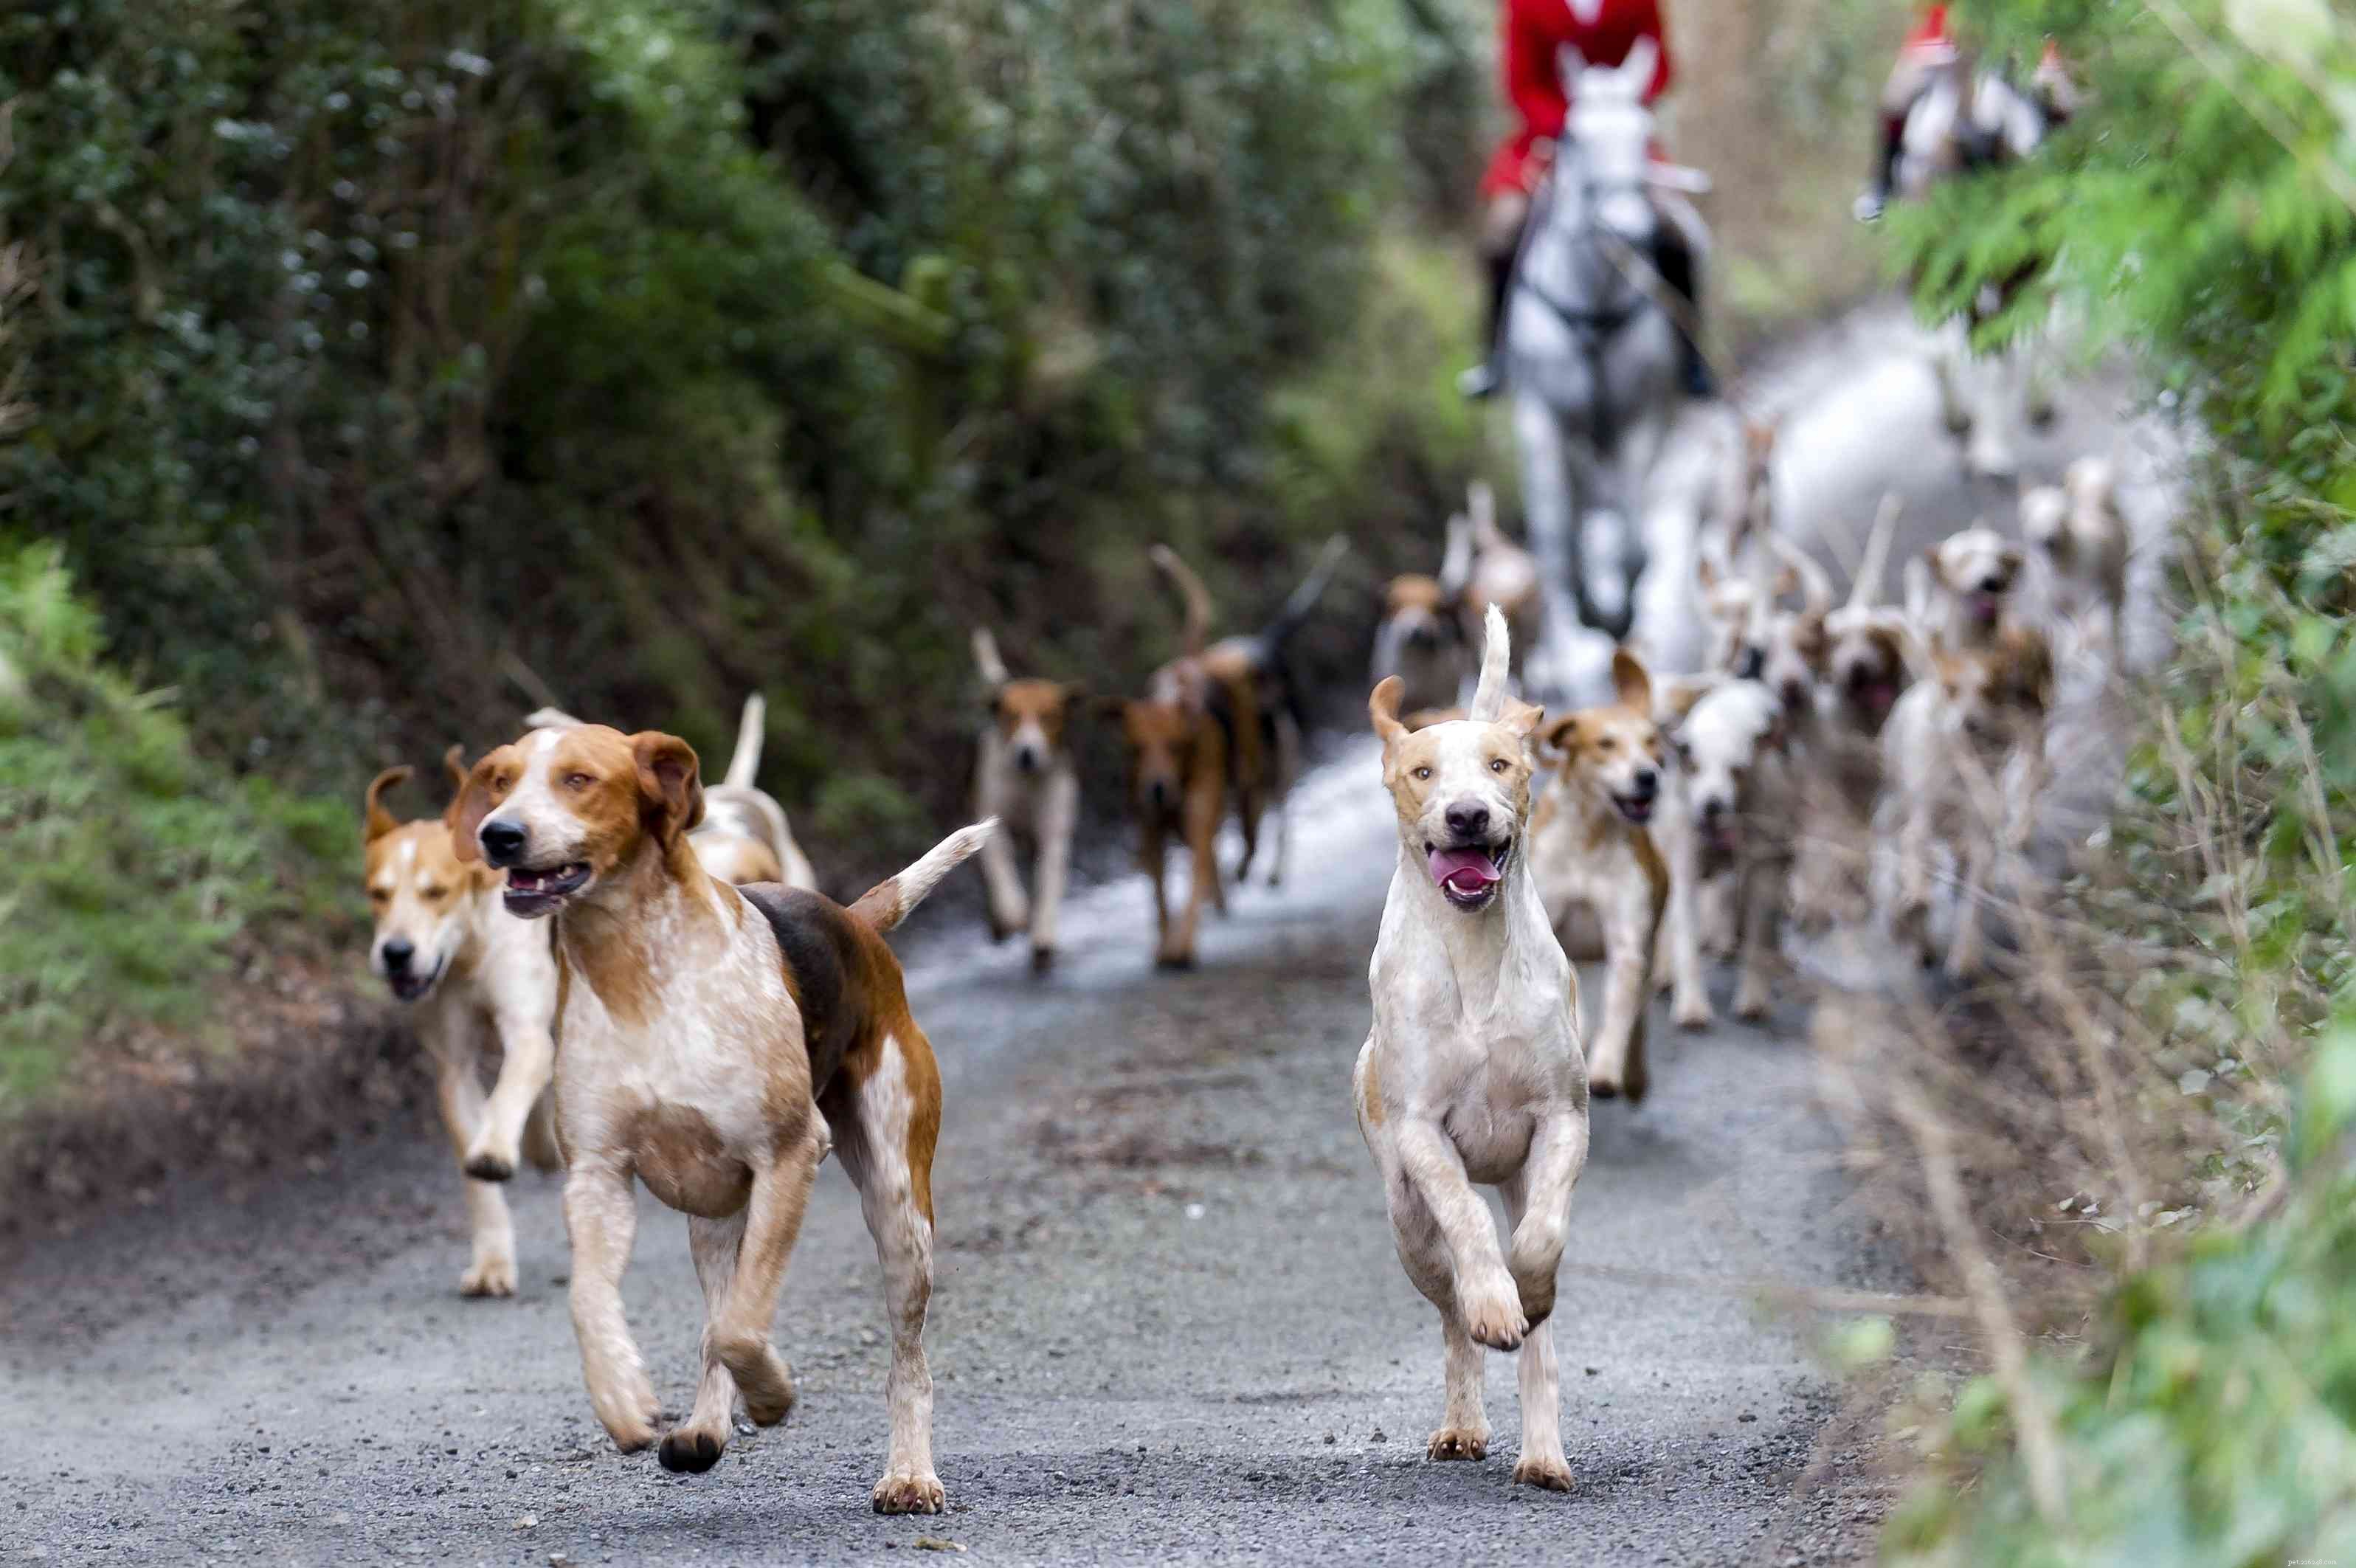 Foxhound américain :profil de race de chien